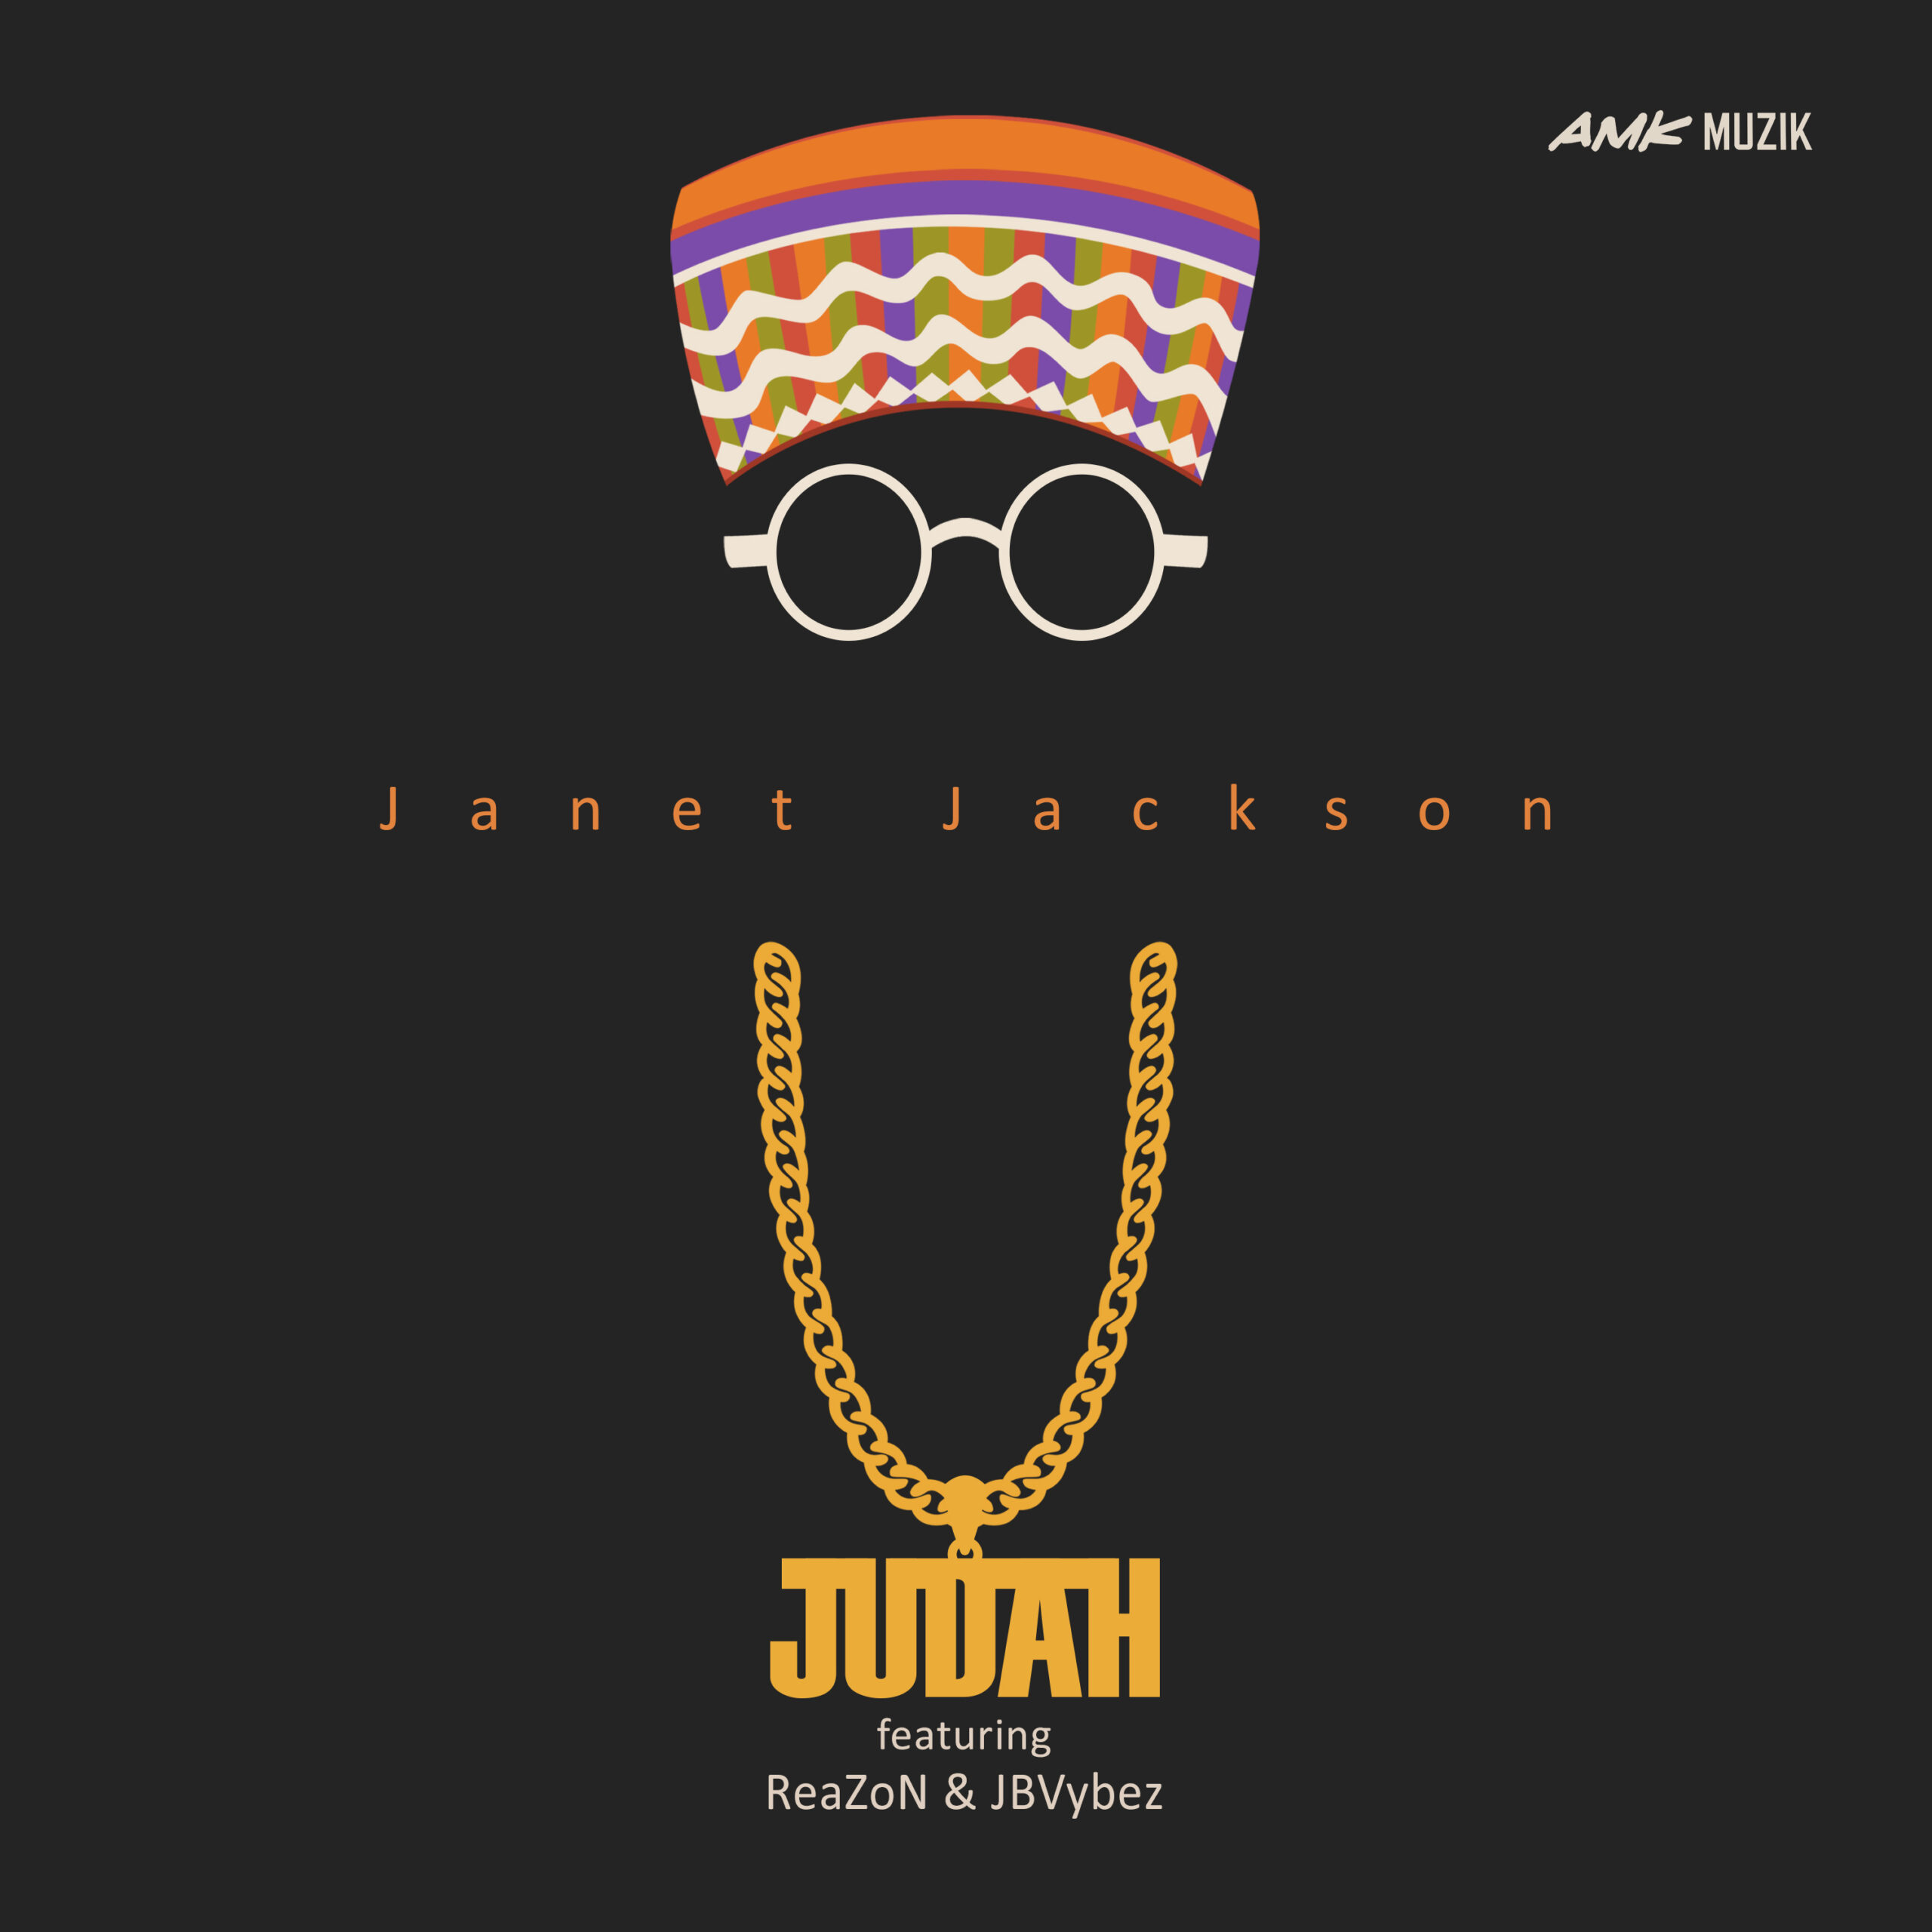 Judah cover art for the single janet Jackson